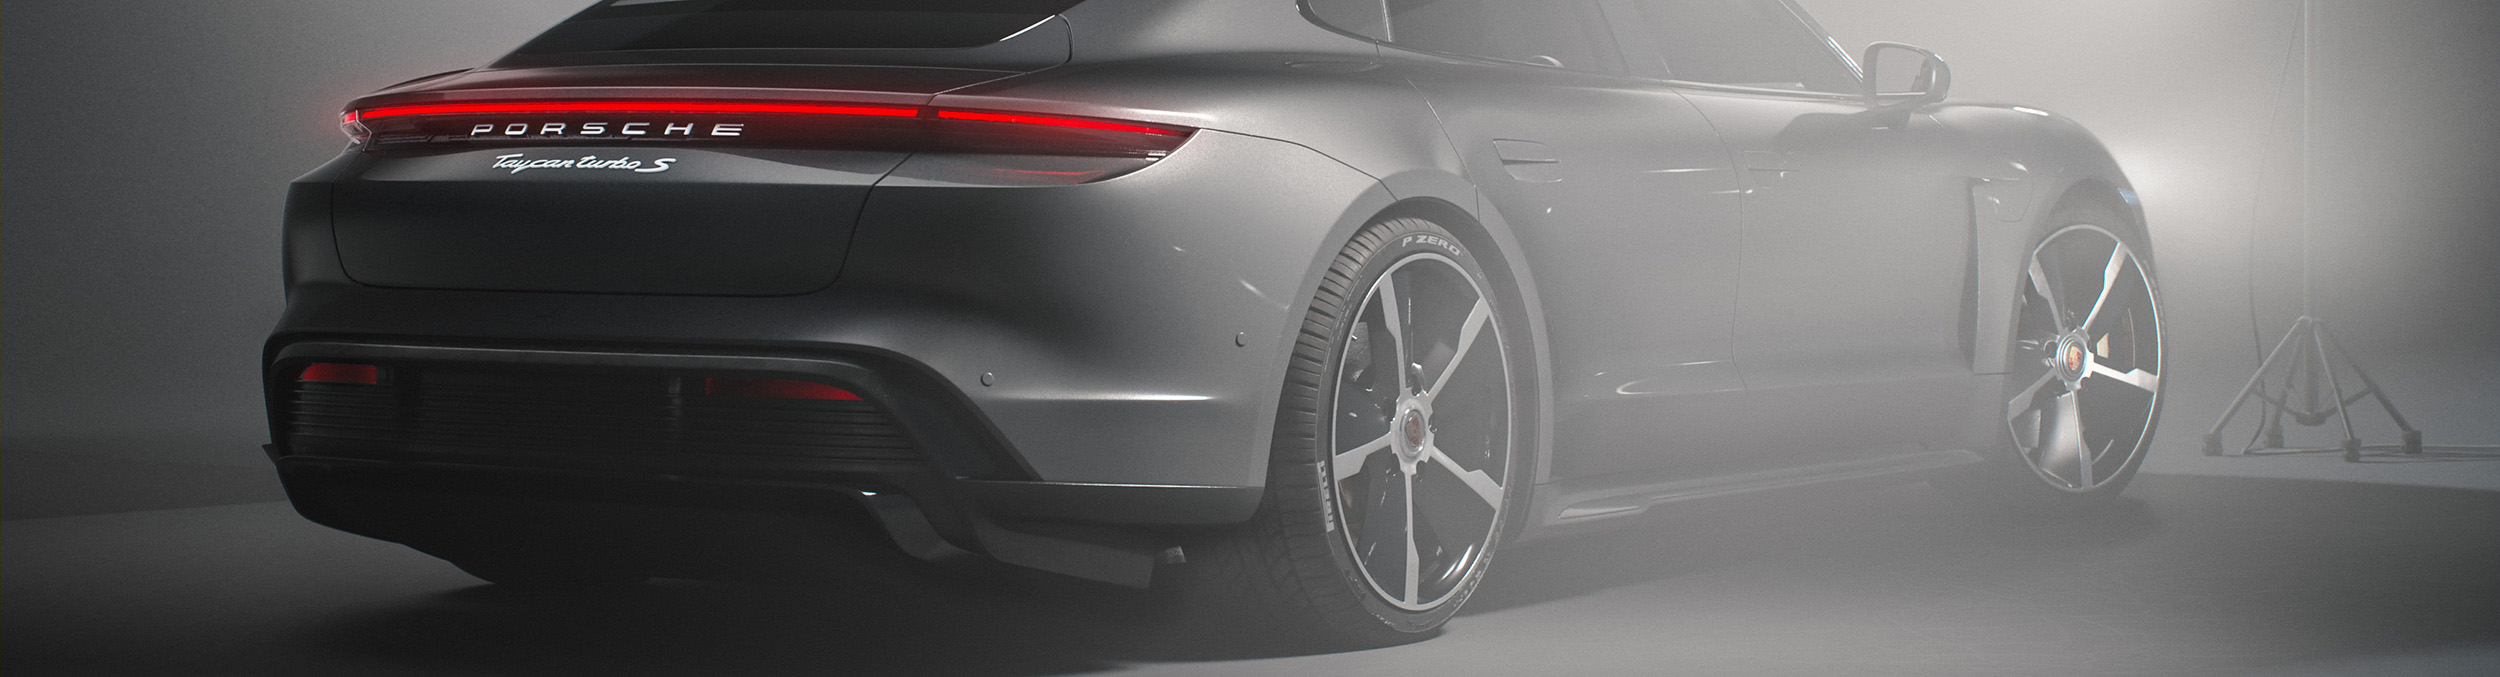 Porsche Taycan: Studio Renders